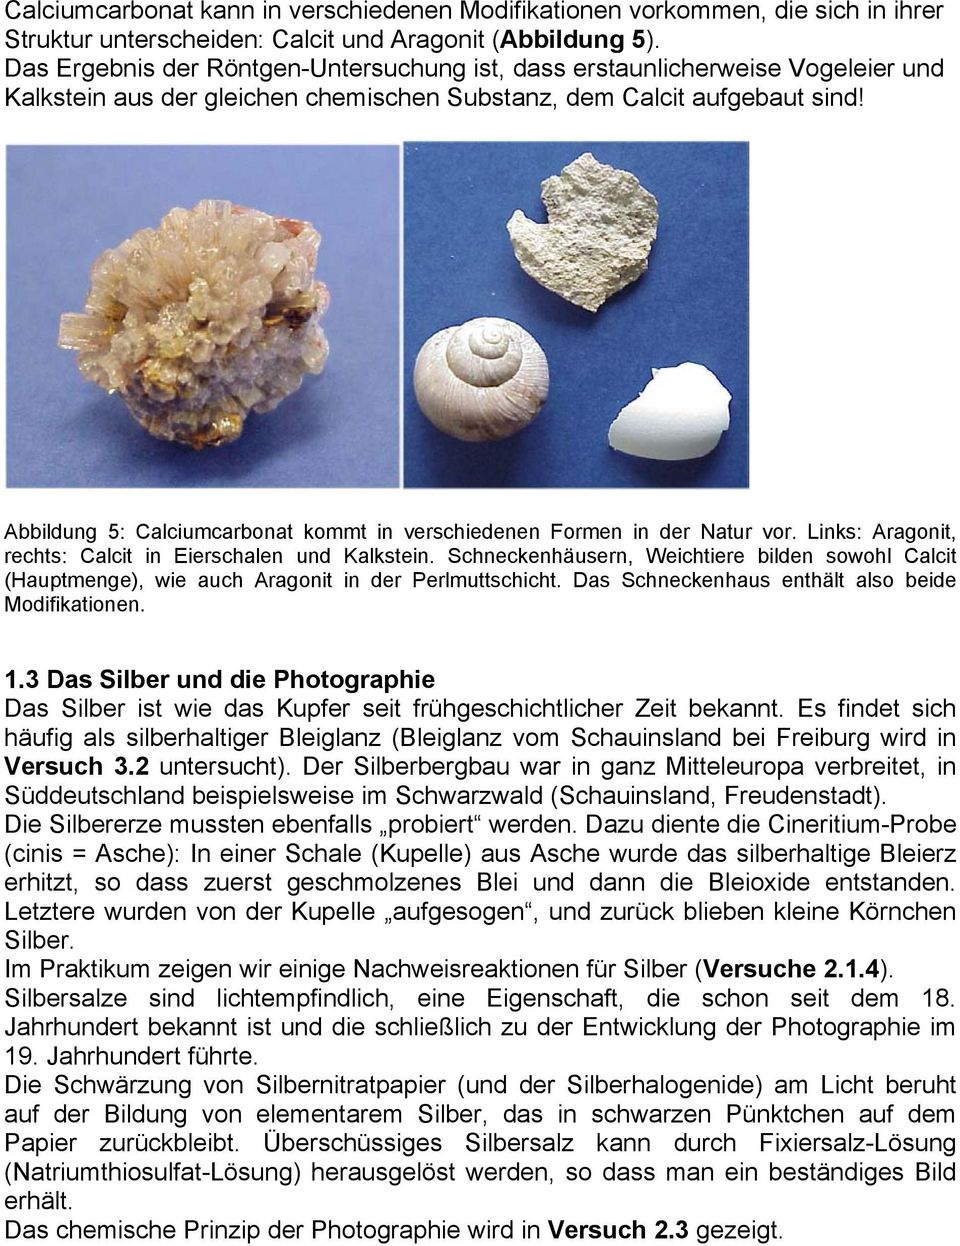 Abbildung 5: Calciumcarbonat kommt in verschiedenen Formen in der Natur vor. Links: Aragonit, rechts: Calcit in Eierschalen und Kalkstein.